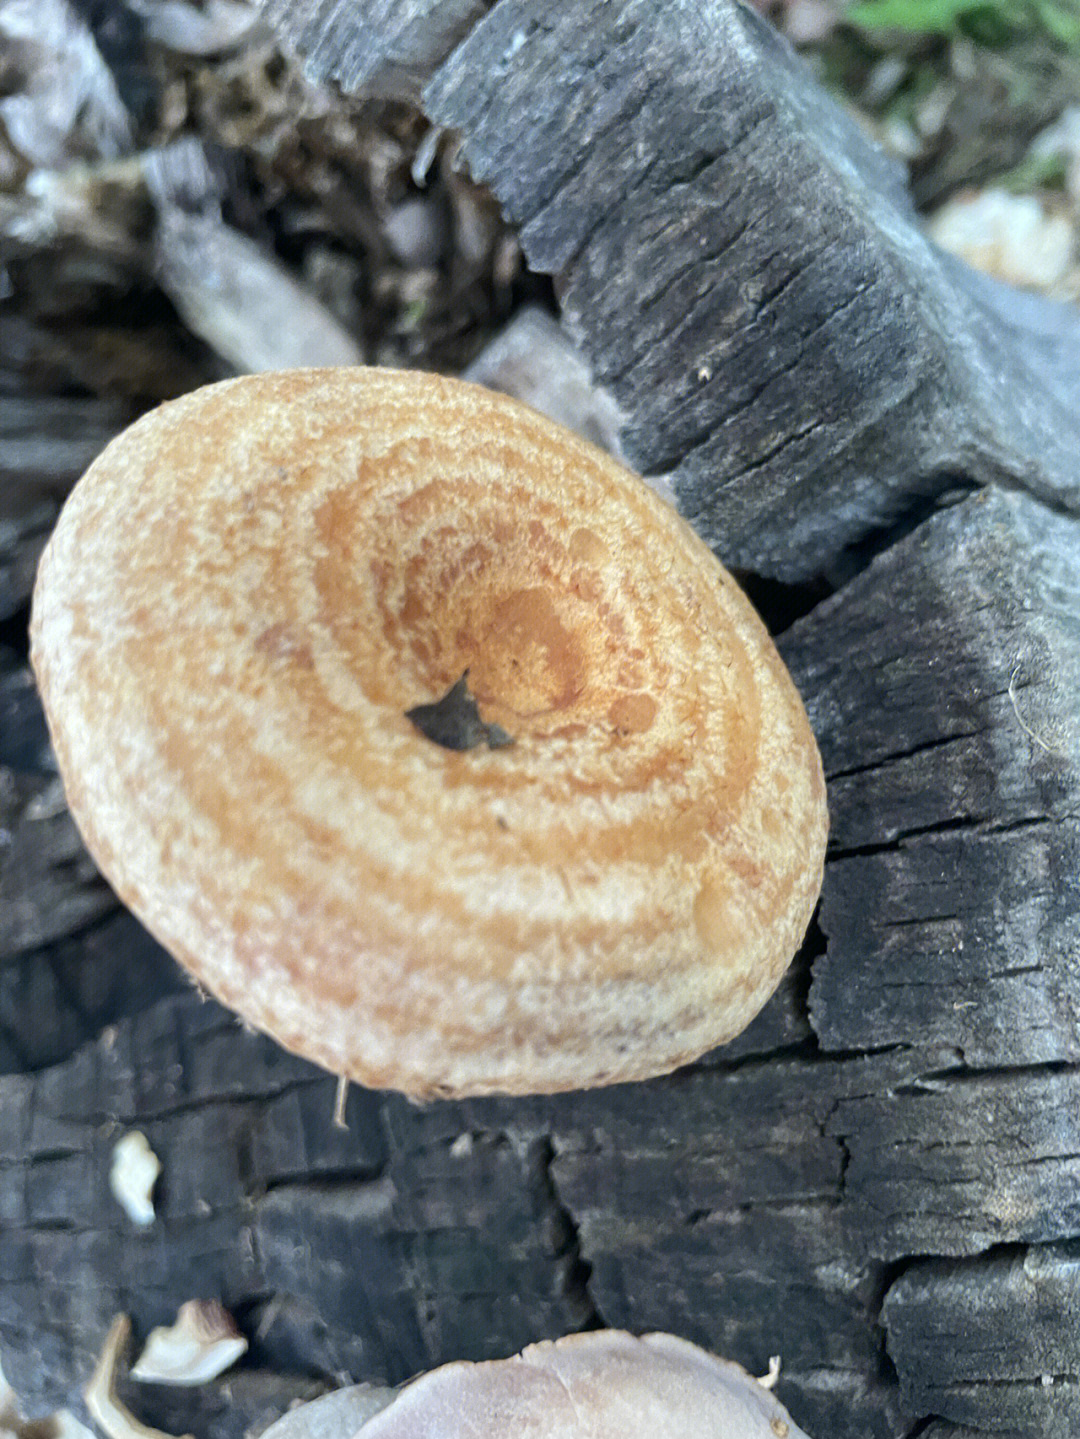 菌盖上有绒毛的毒乳菇一黄毛乳菇